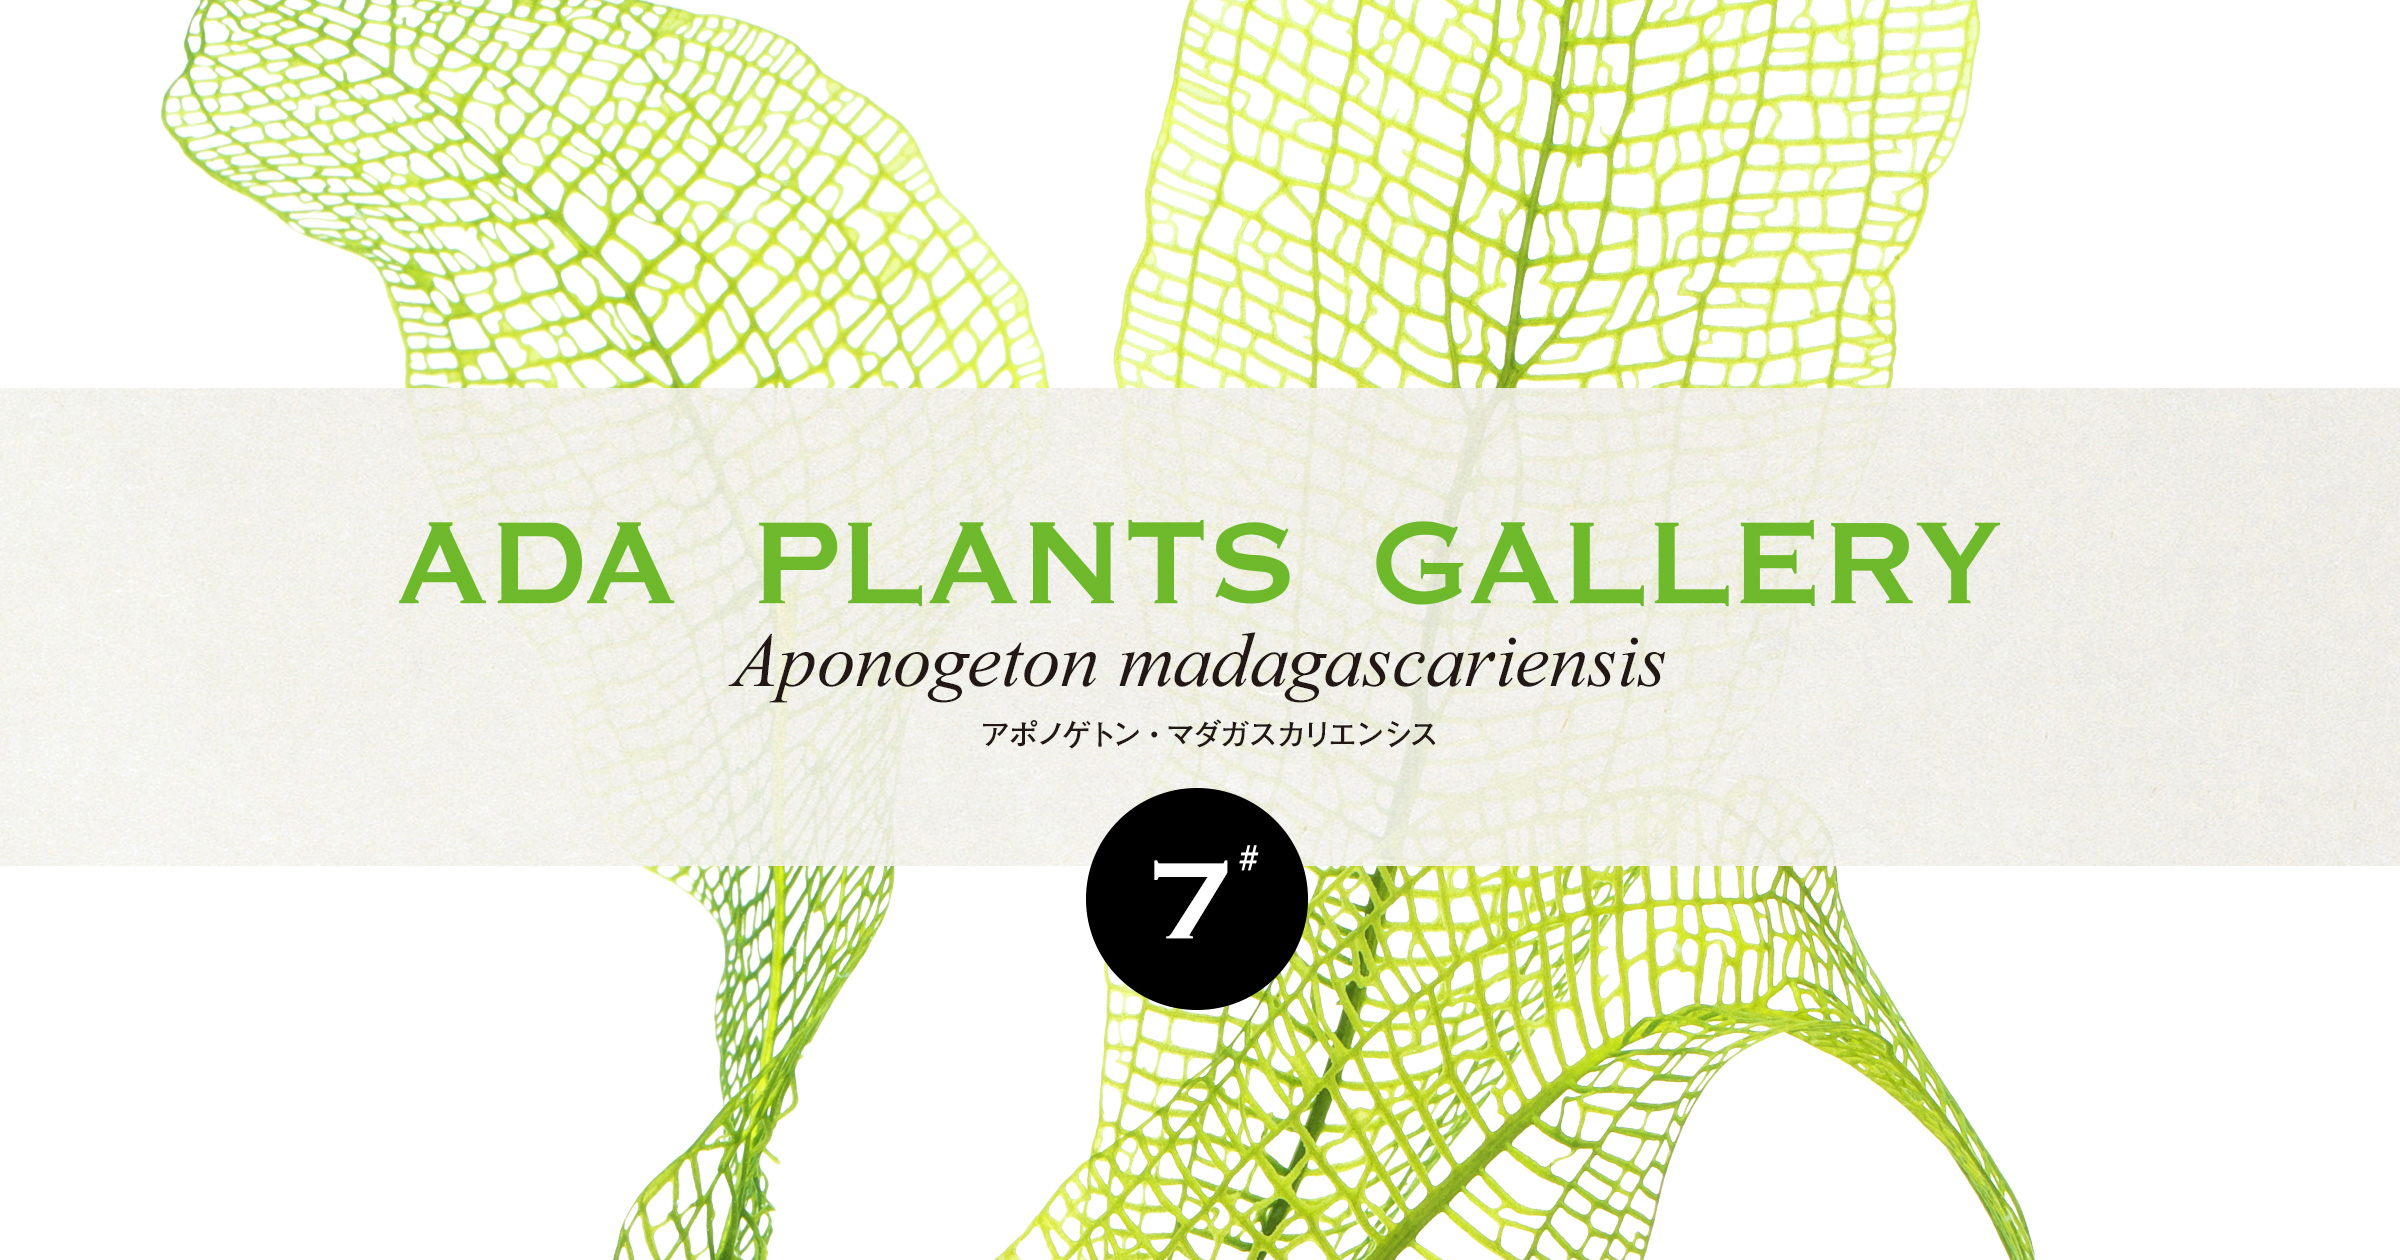 ADA PLANTS GALLERY #07 「アポノゲトン・マダガスカリエンシス